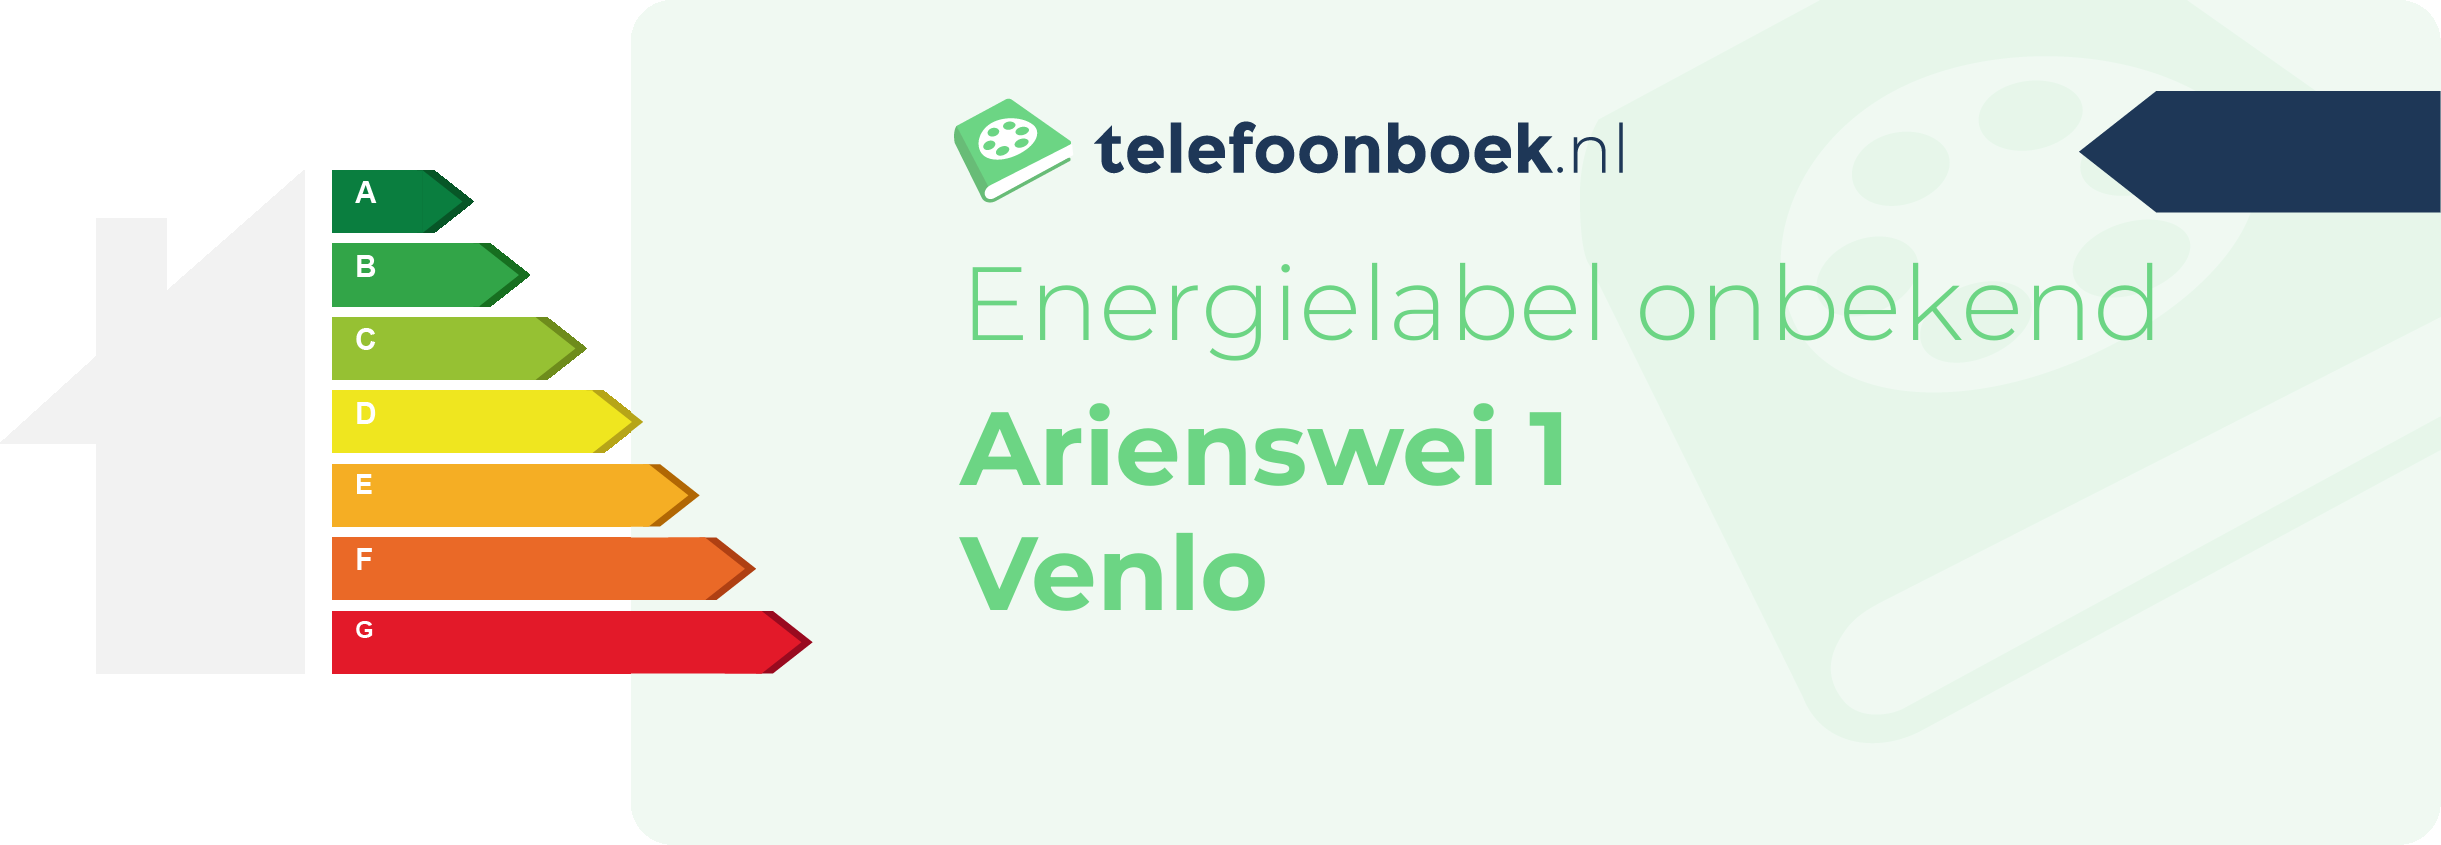 Energielabel Arienswei 1 Venlo